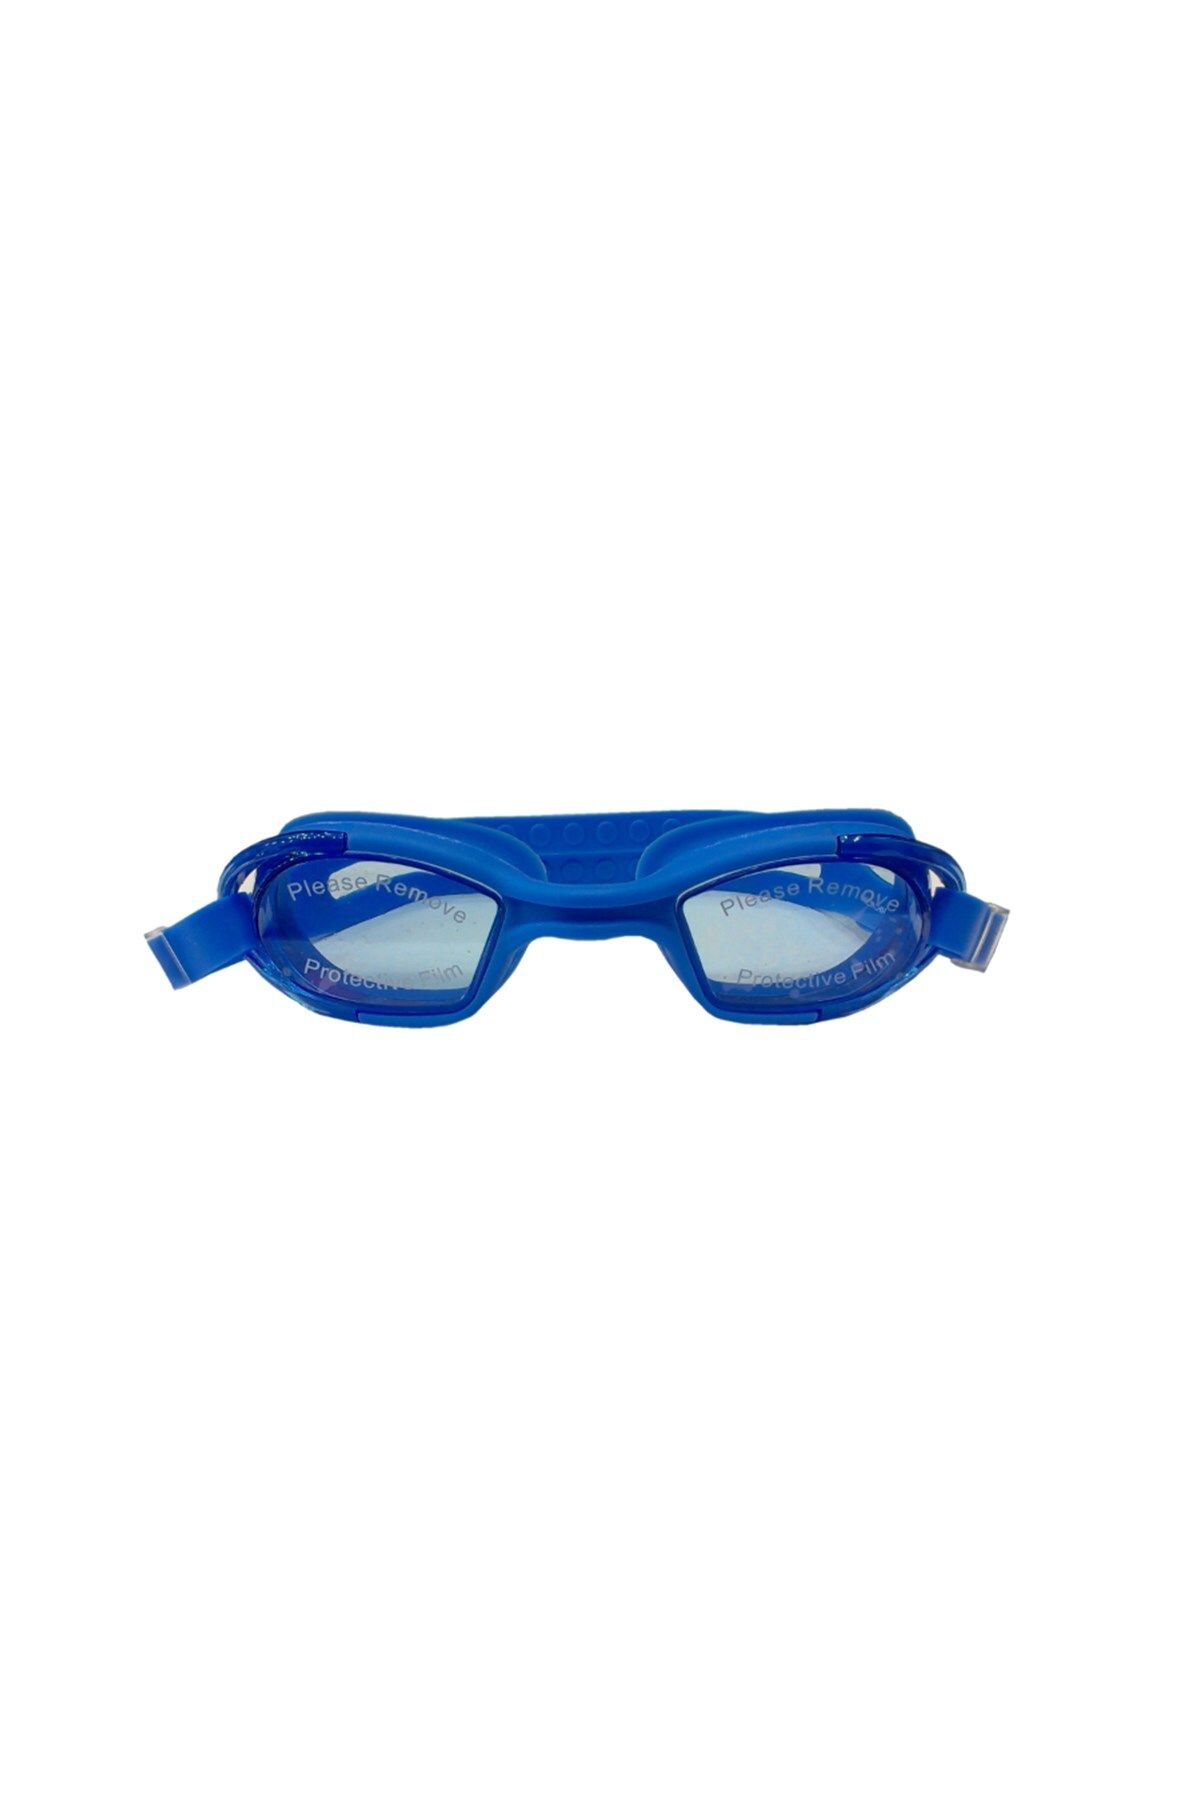 SELEX Unisex Mavi Yüzücü Gözlüğü Sg 2600 Mavi-mavi